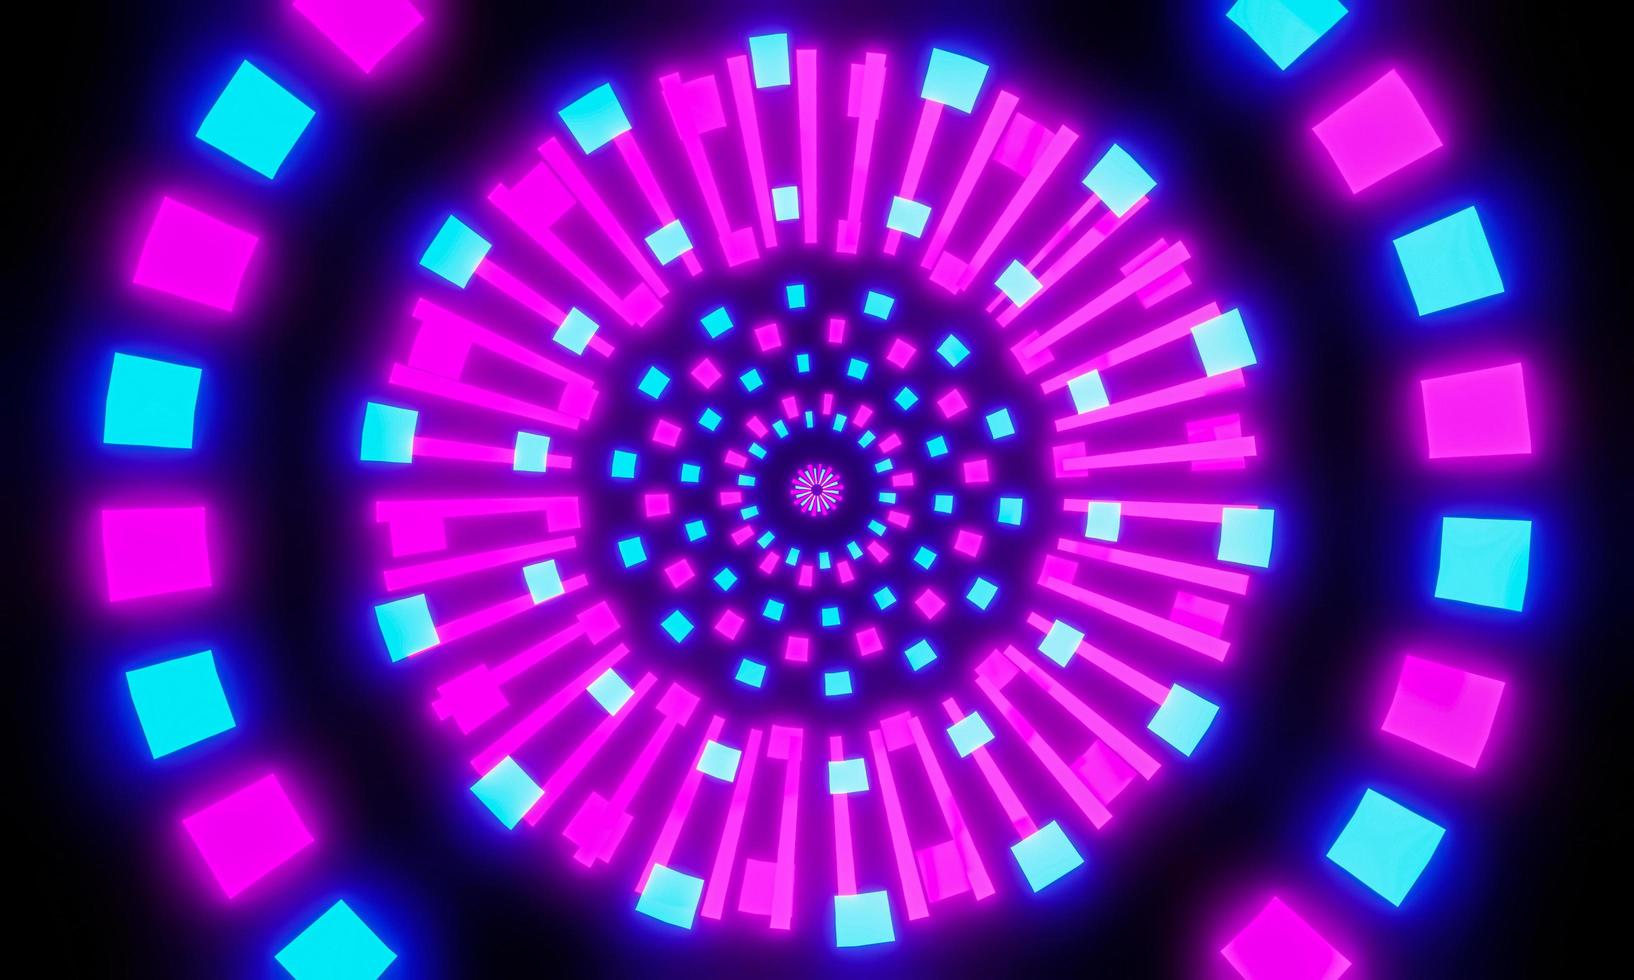 el túnel de luz se caracteriza por el hiperespacio, multicolor, hacia el centro. lanzándose al centro de los senderos de luz de fantasía o entrando en el mundo virtual del metaverso. representación 3d foto